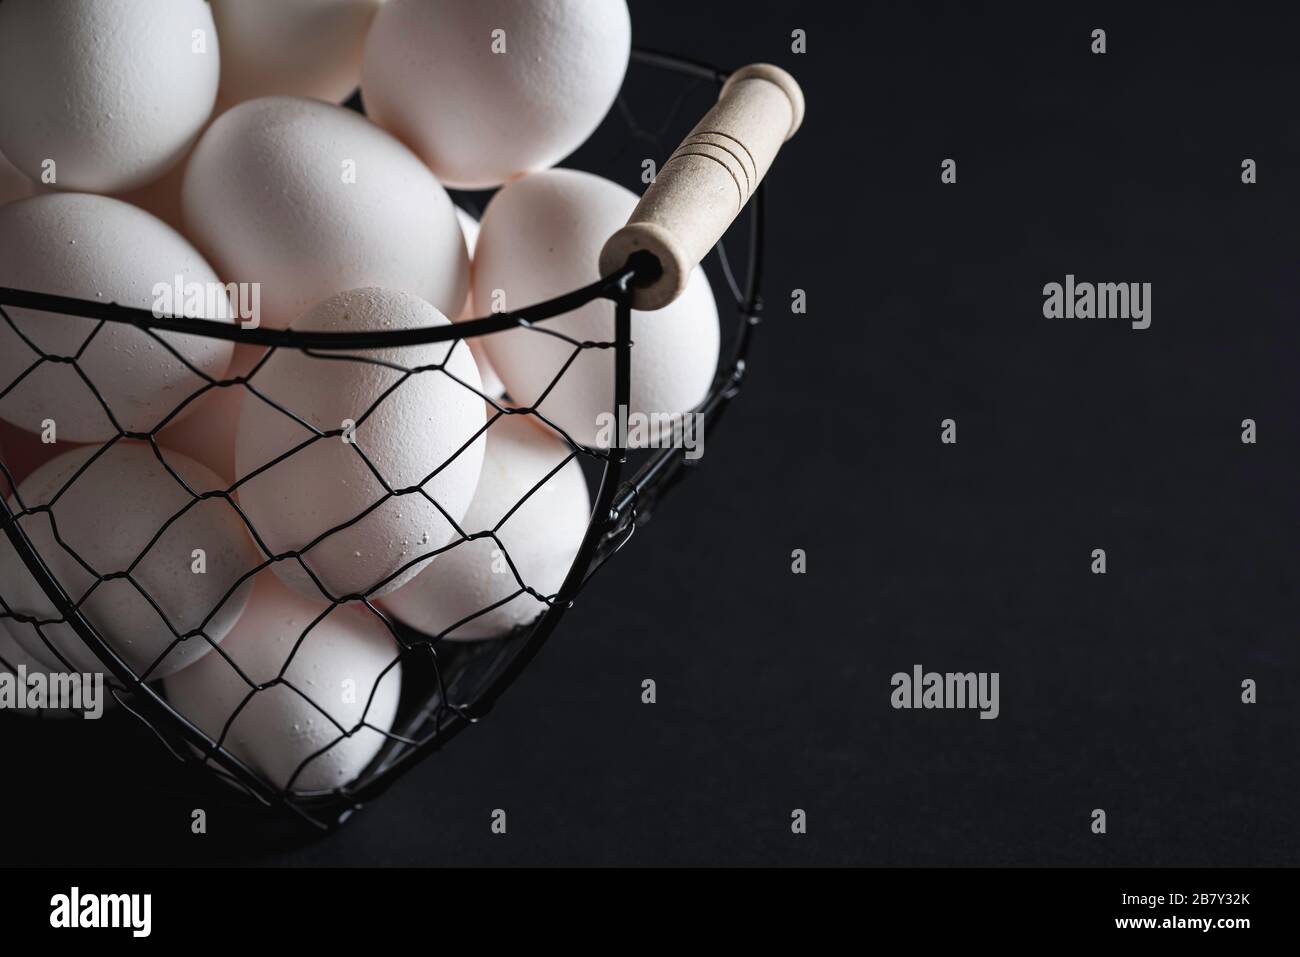 Uova bianche in un cesto di ferro su tavolo nero, in scarsa luce. Uova di pollo fresche, una ricca fonte di proteine. Foto Stock